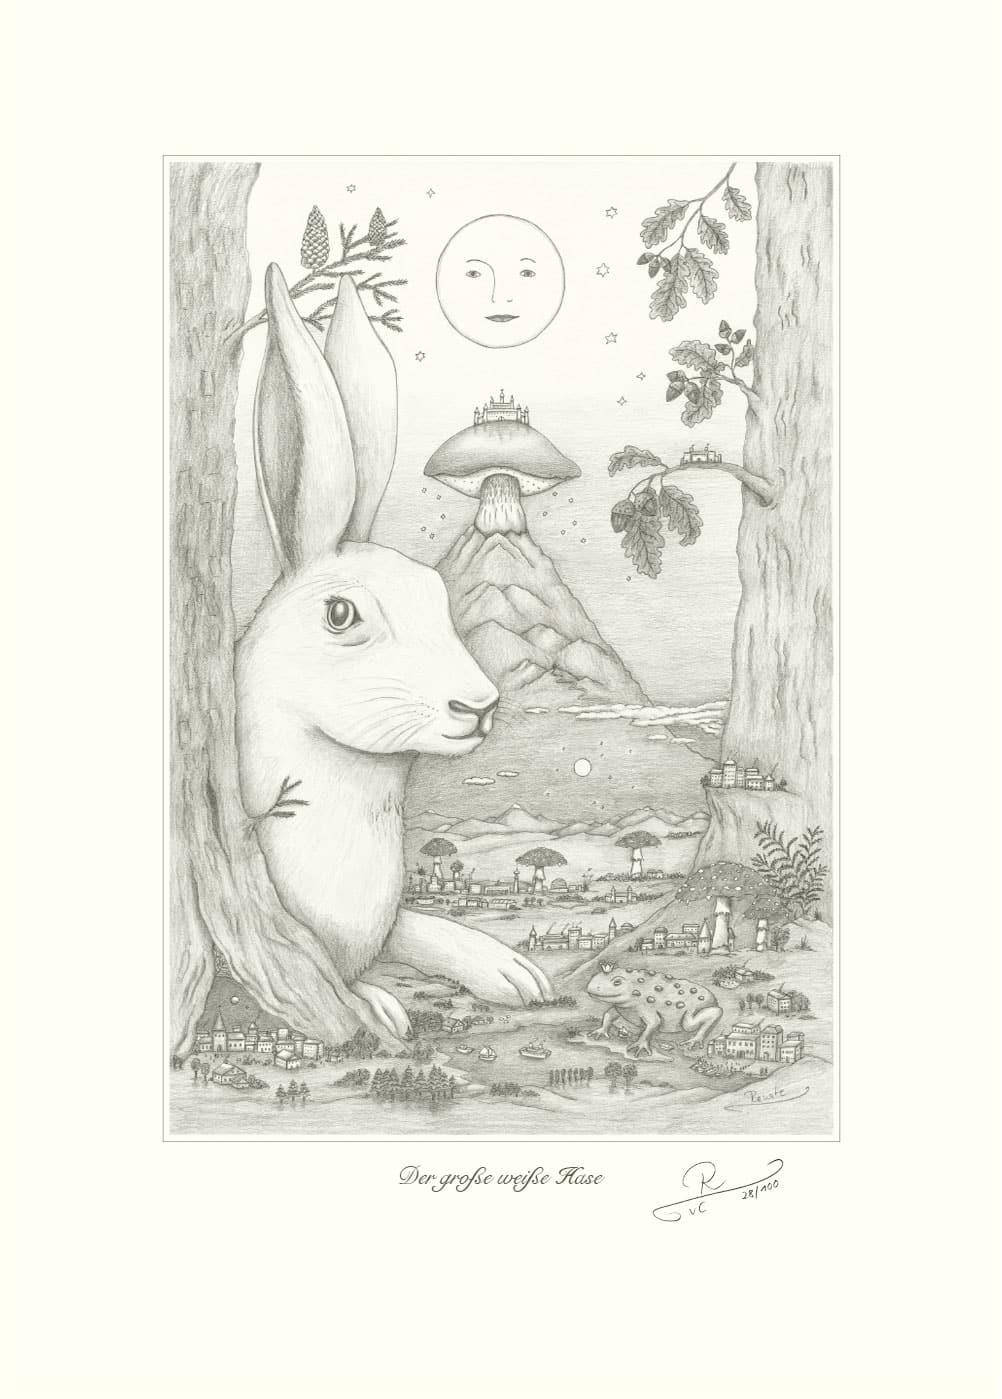 Dergrosseweisse Hase Zeichnung Handsigniert©RvCh 1 - Renate von Charlottenburg